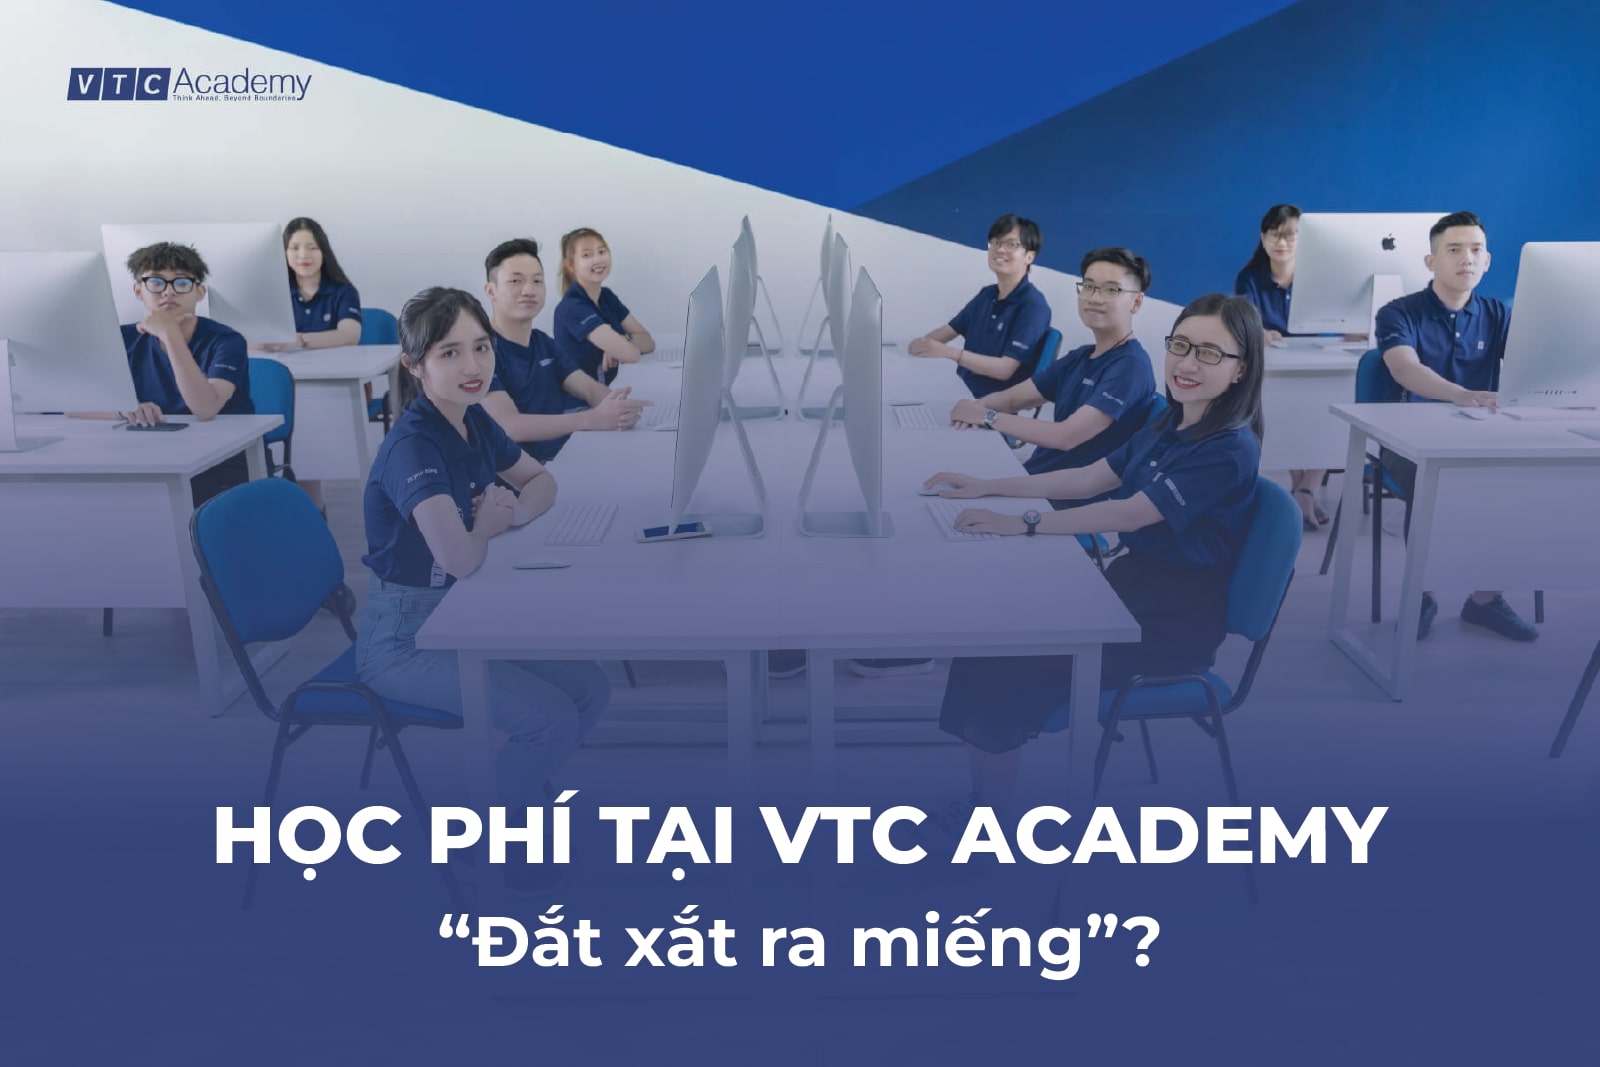 Học ở VTC Academy đắt xắt ra miếng hay không?